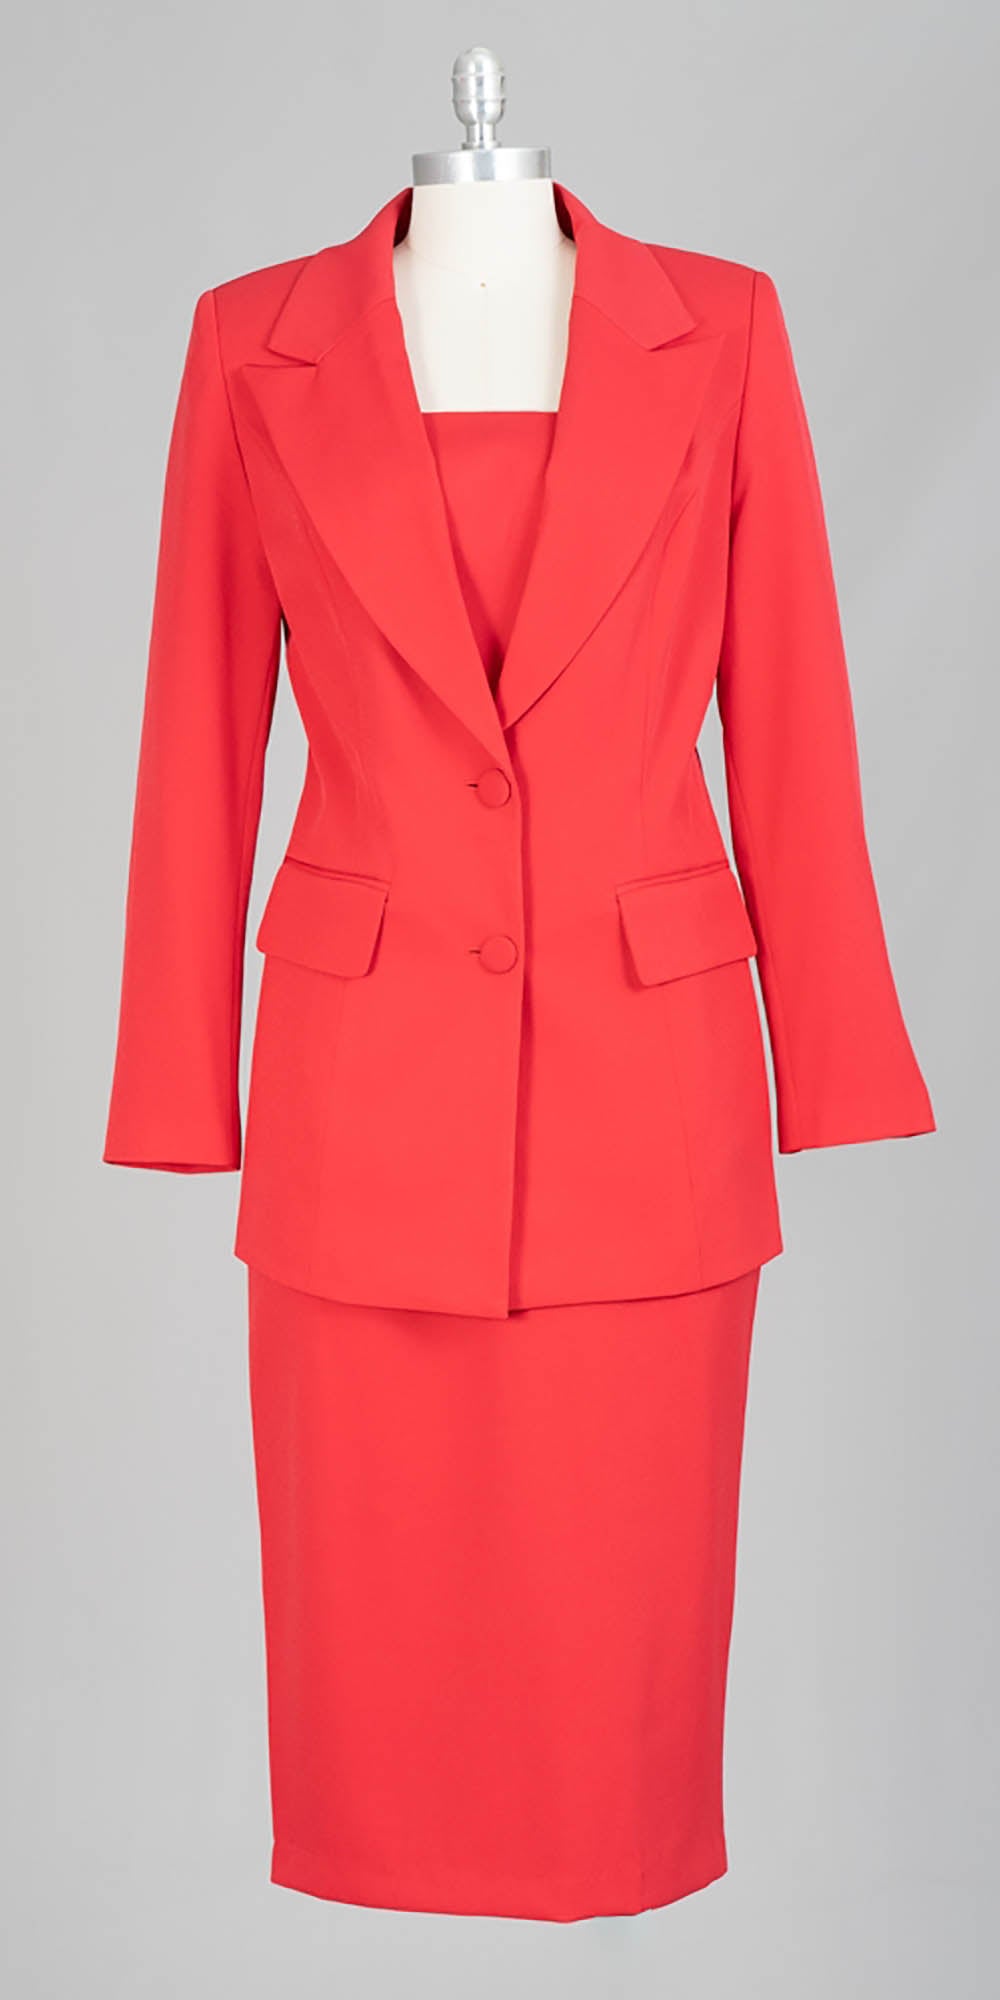 Aussie Austine - 12442 - Red - 2pc Skirt Suit